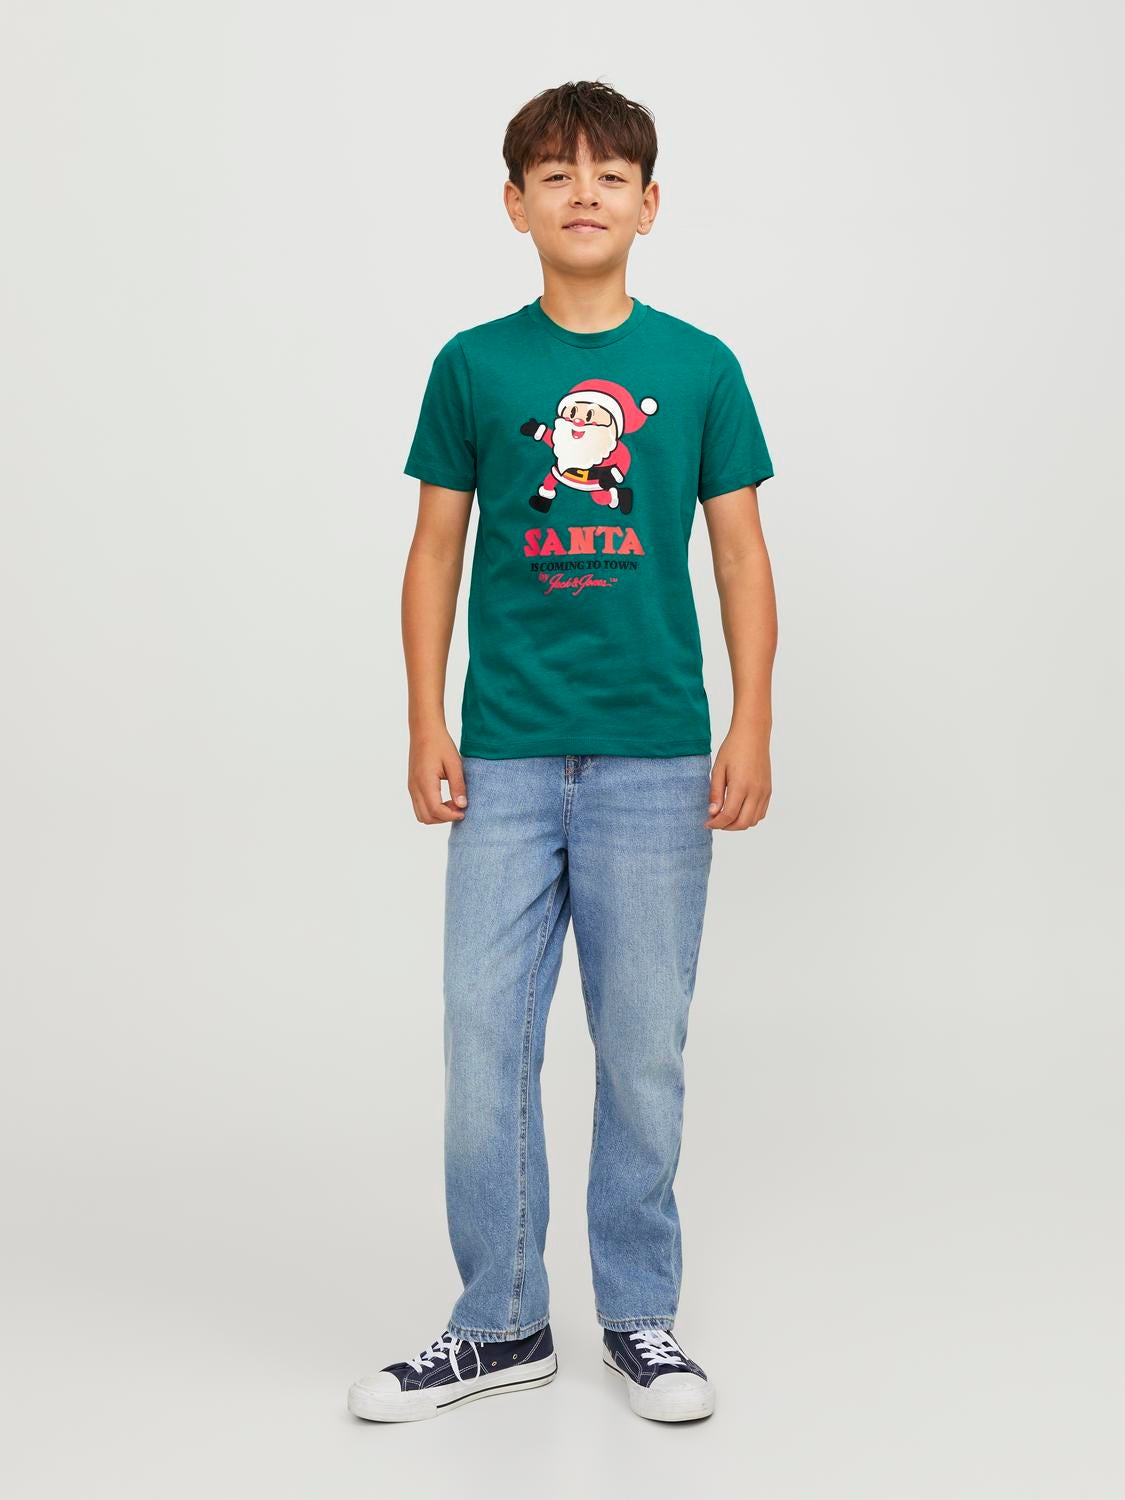 X-mas T-shirt Dla chłopców